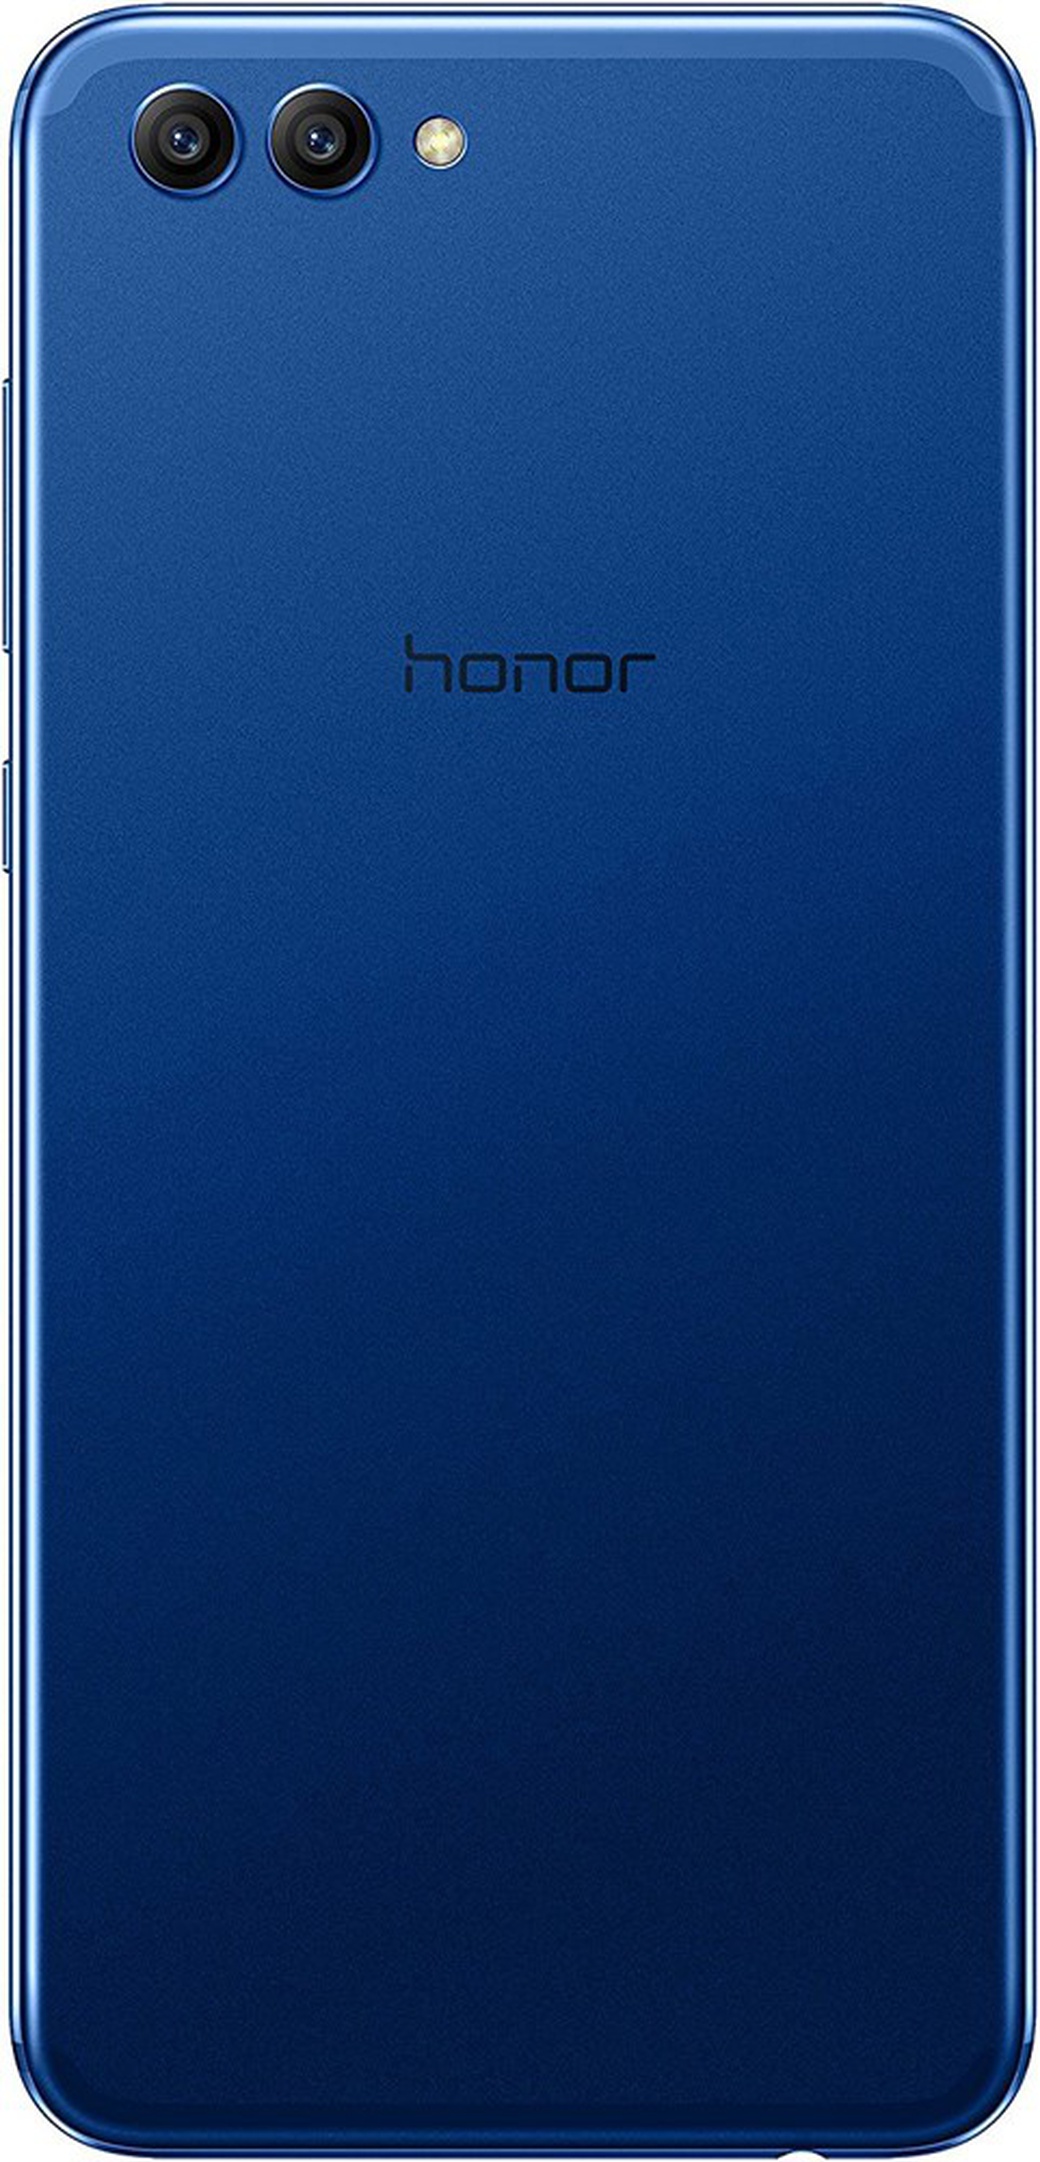 Huawei Honor view 10